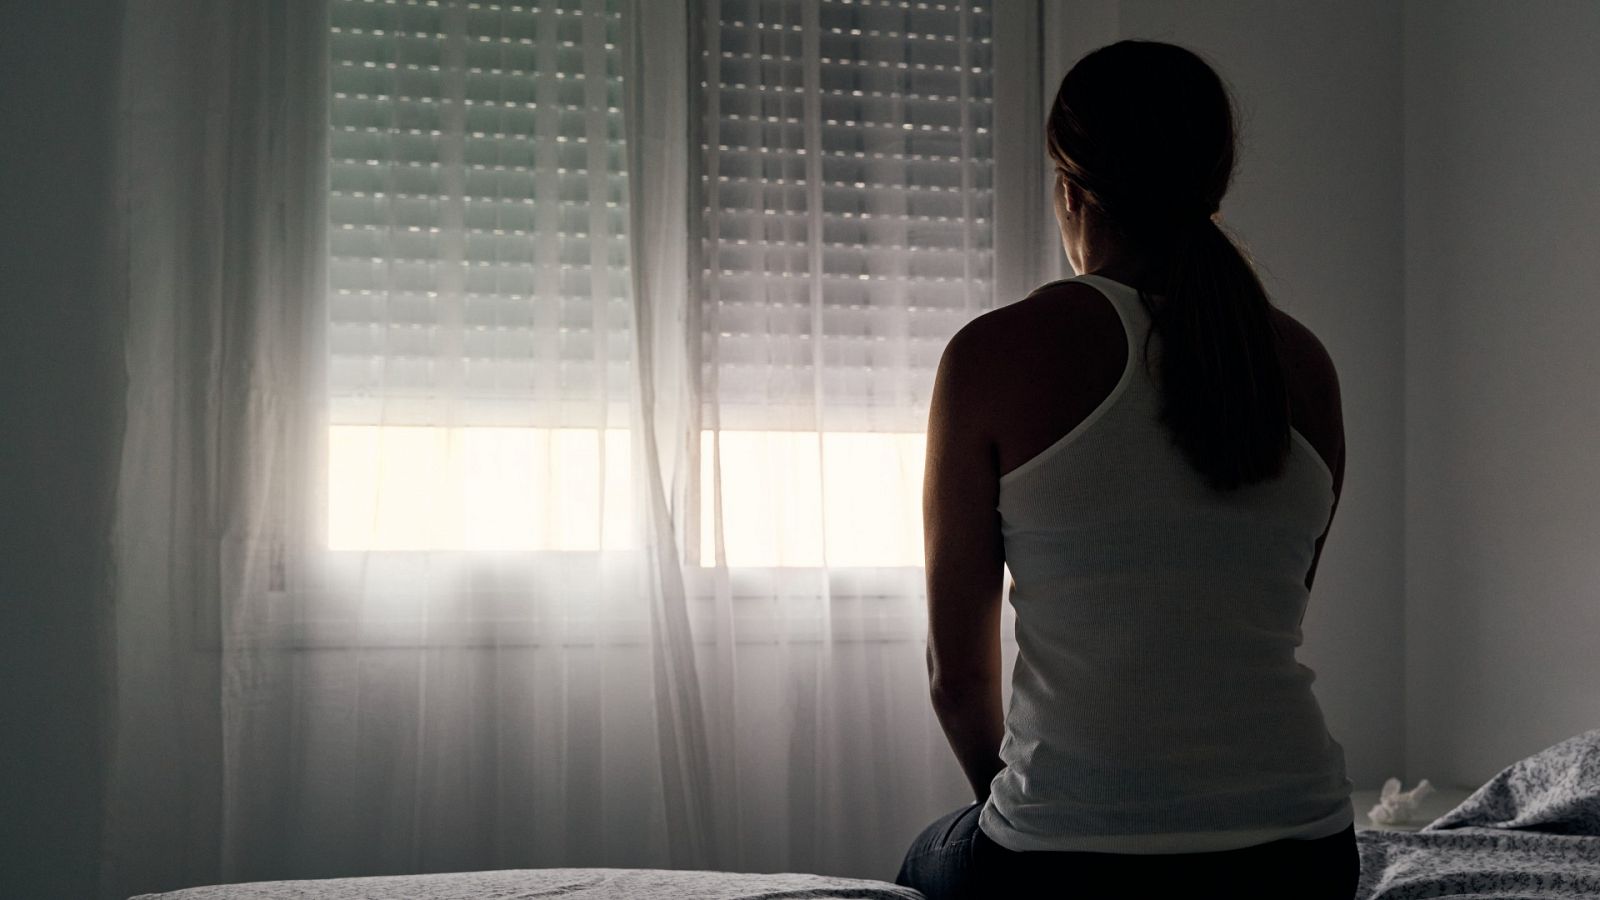 El sentimiento de culpa de muchas víctimas de violencia sexual: "El foco debería estar en el agresor"